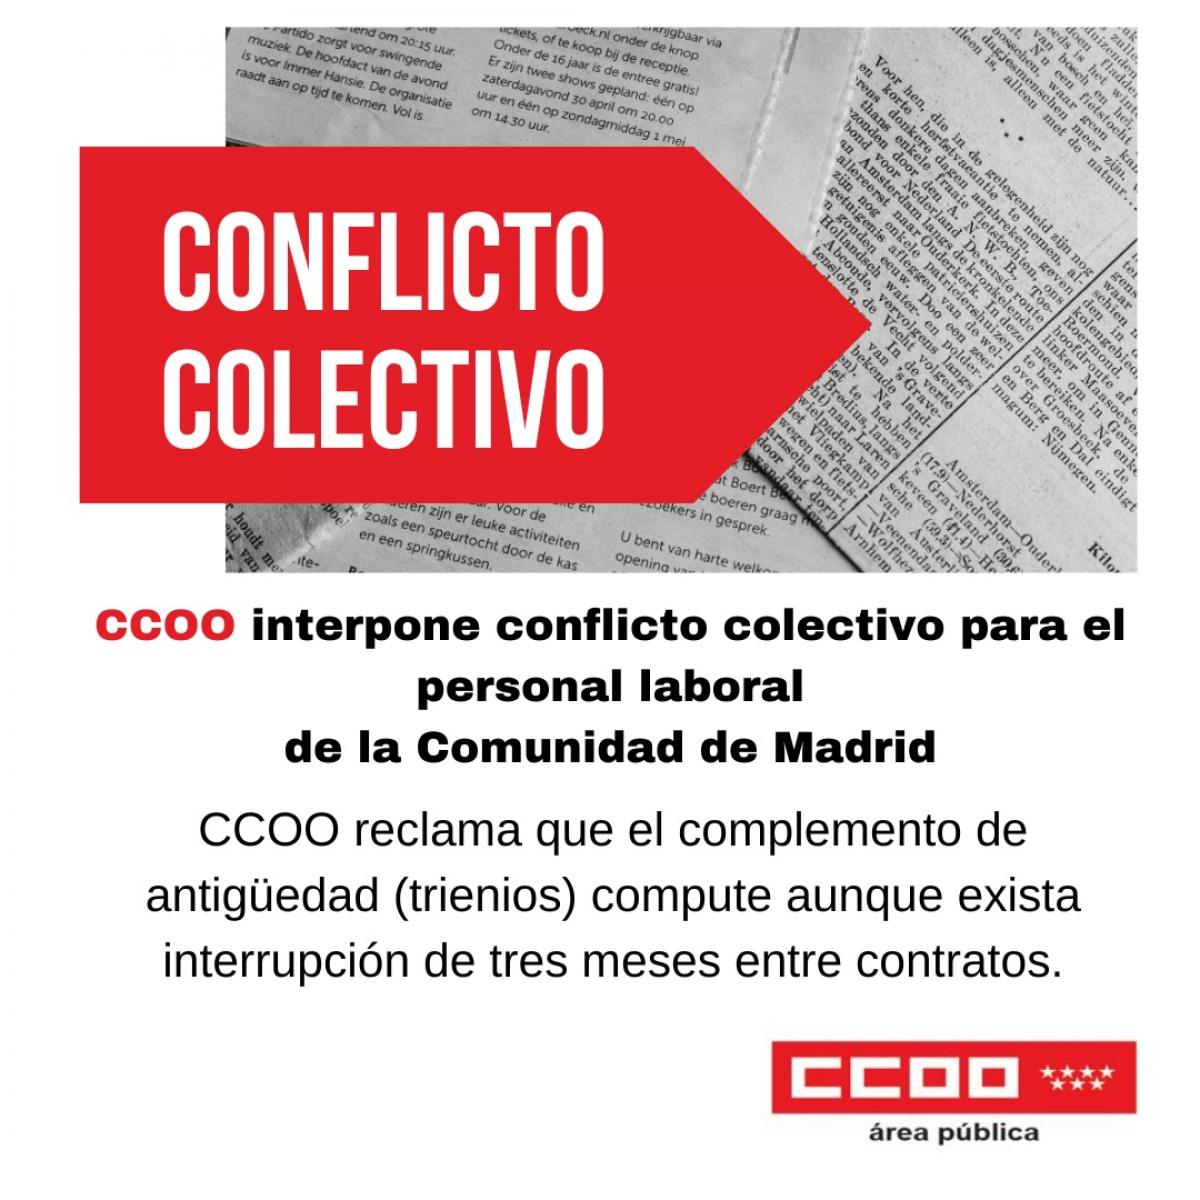 Conflicto Colectivo en el personal laboral de la Comunidad de Madrid